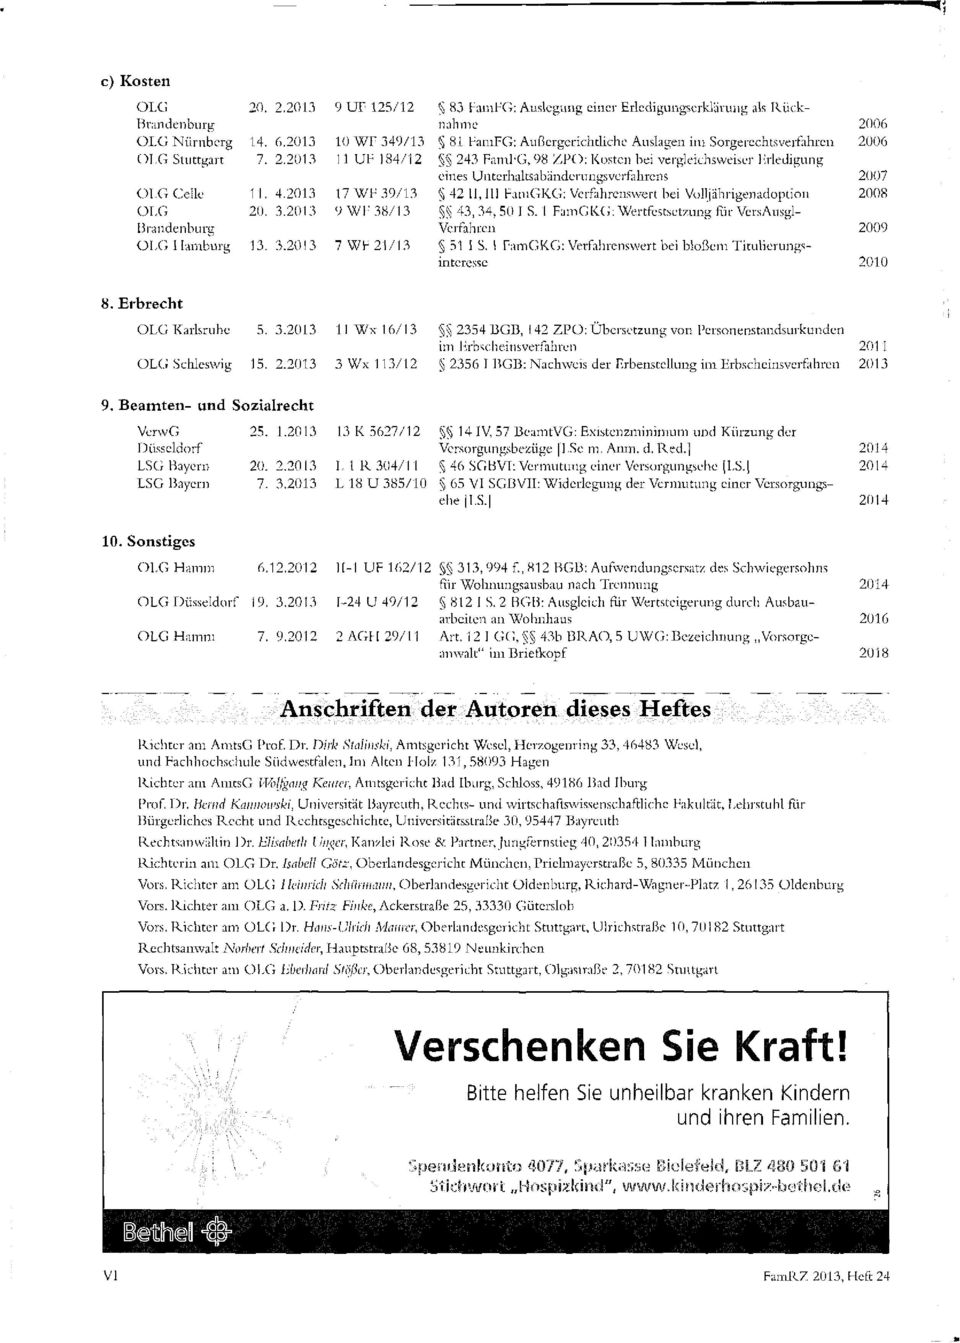 06 OLG Stuttgart 7. 2.2013 11 UF 184/12 243 FamFG, 98 ZPO: Kosten bei vergleichsweiser Erledigung eines Unterhaltsabänderungsverfahrens 2007 OLG Celle 11. 4.